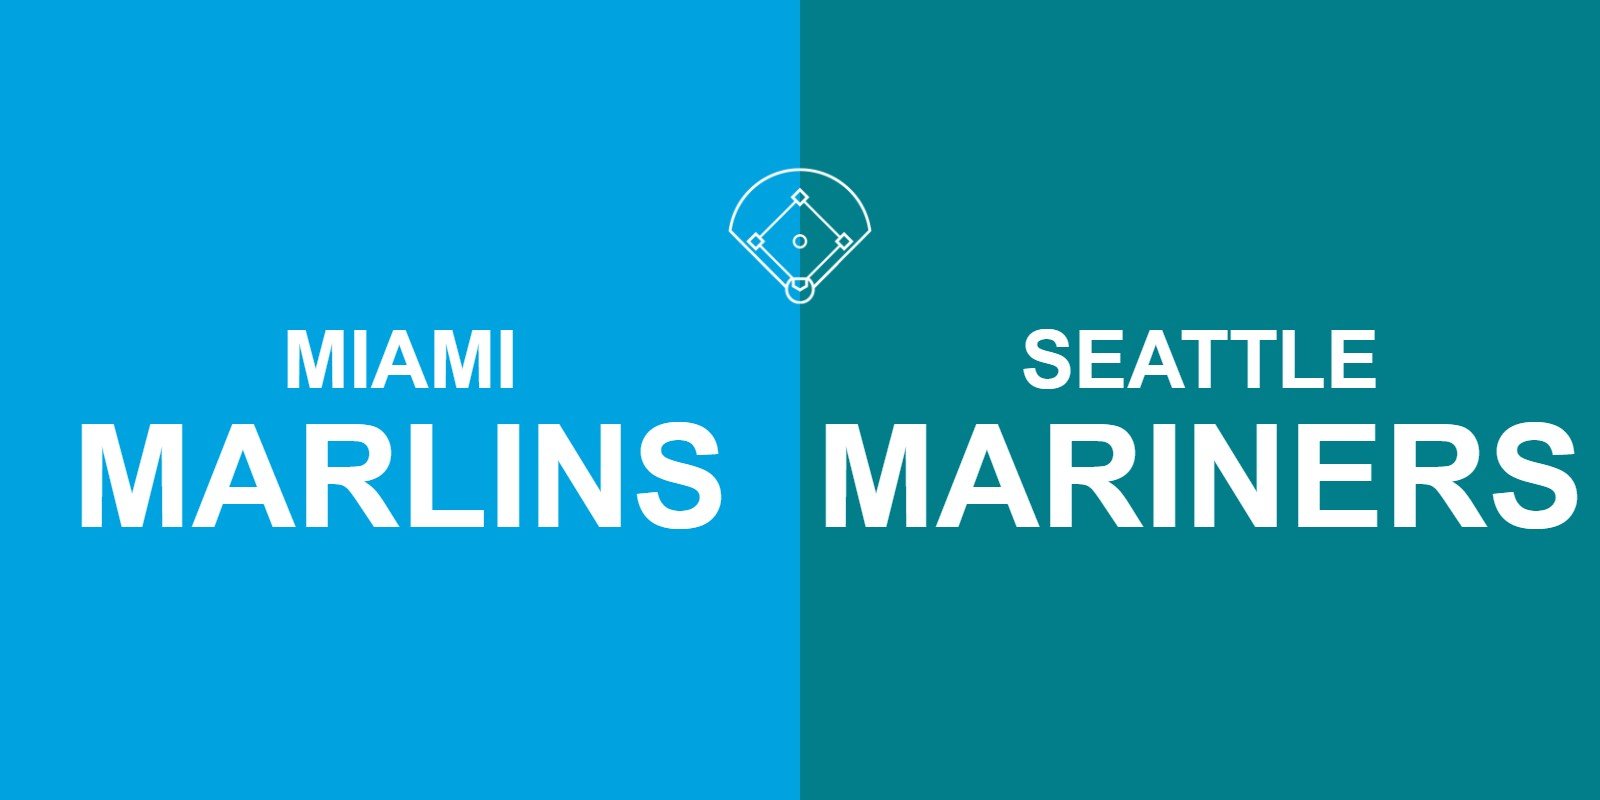 Marlins vs Mariners